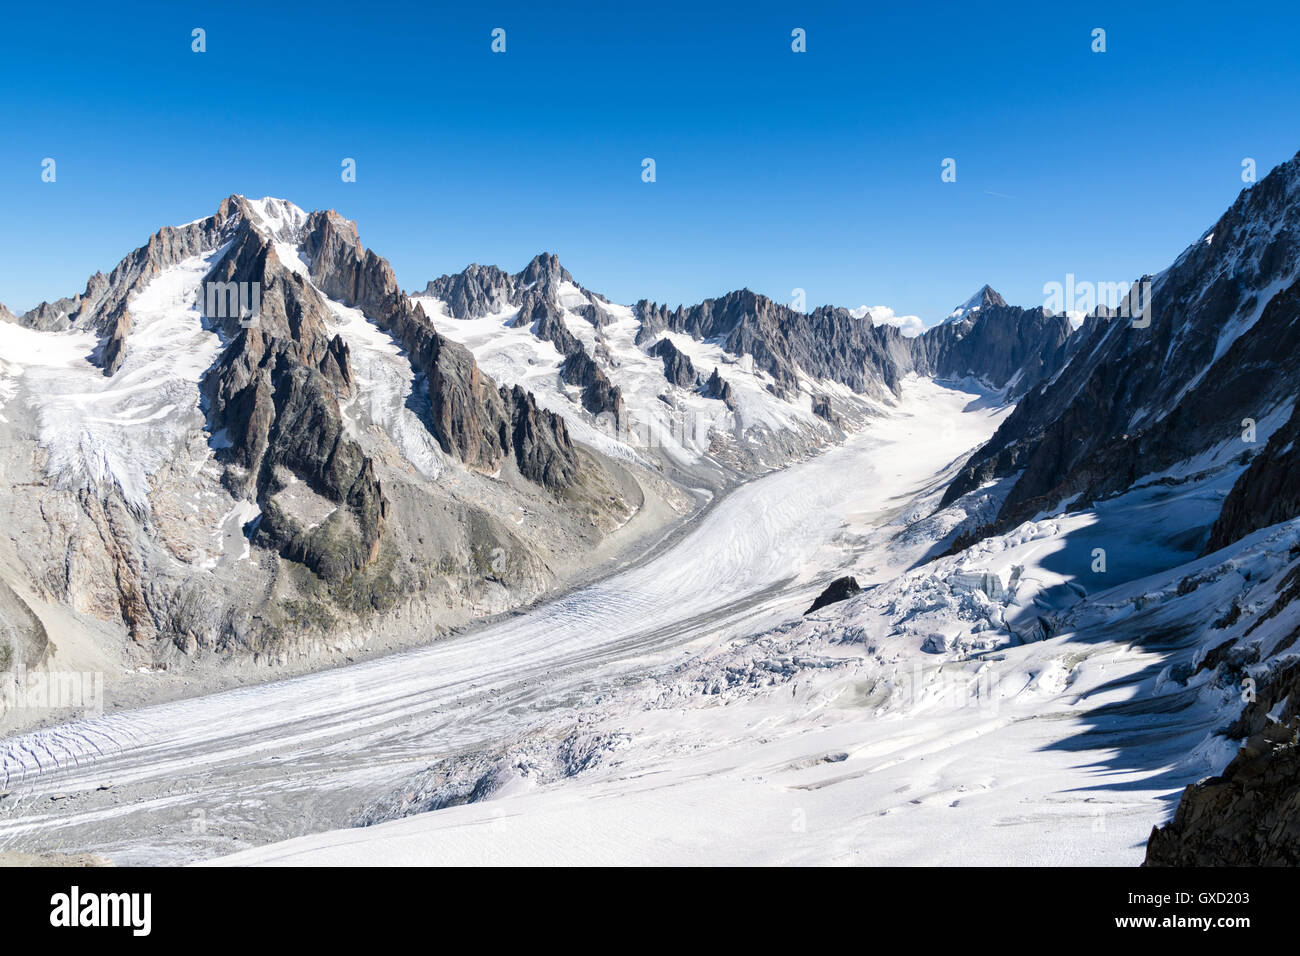 Argentiere glacier, Aig. Chardonnet, Col du Chardonnet, and Aig. Argentiere from Grand Montets Stock Photo